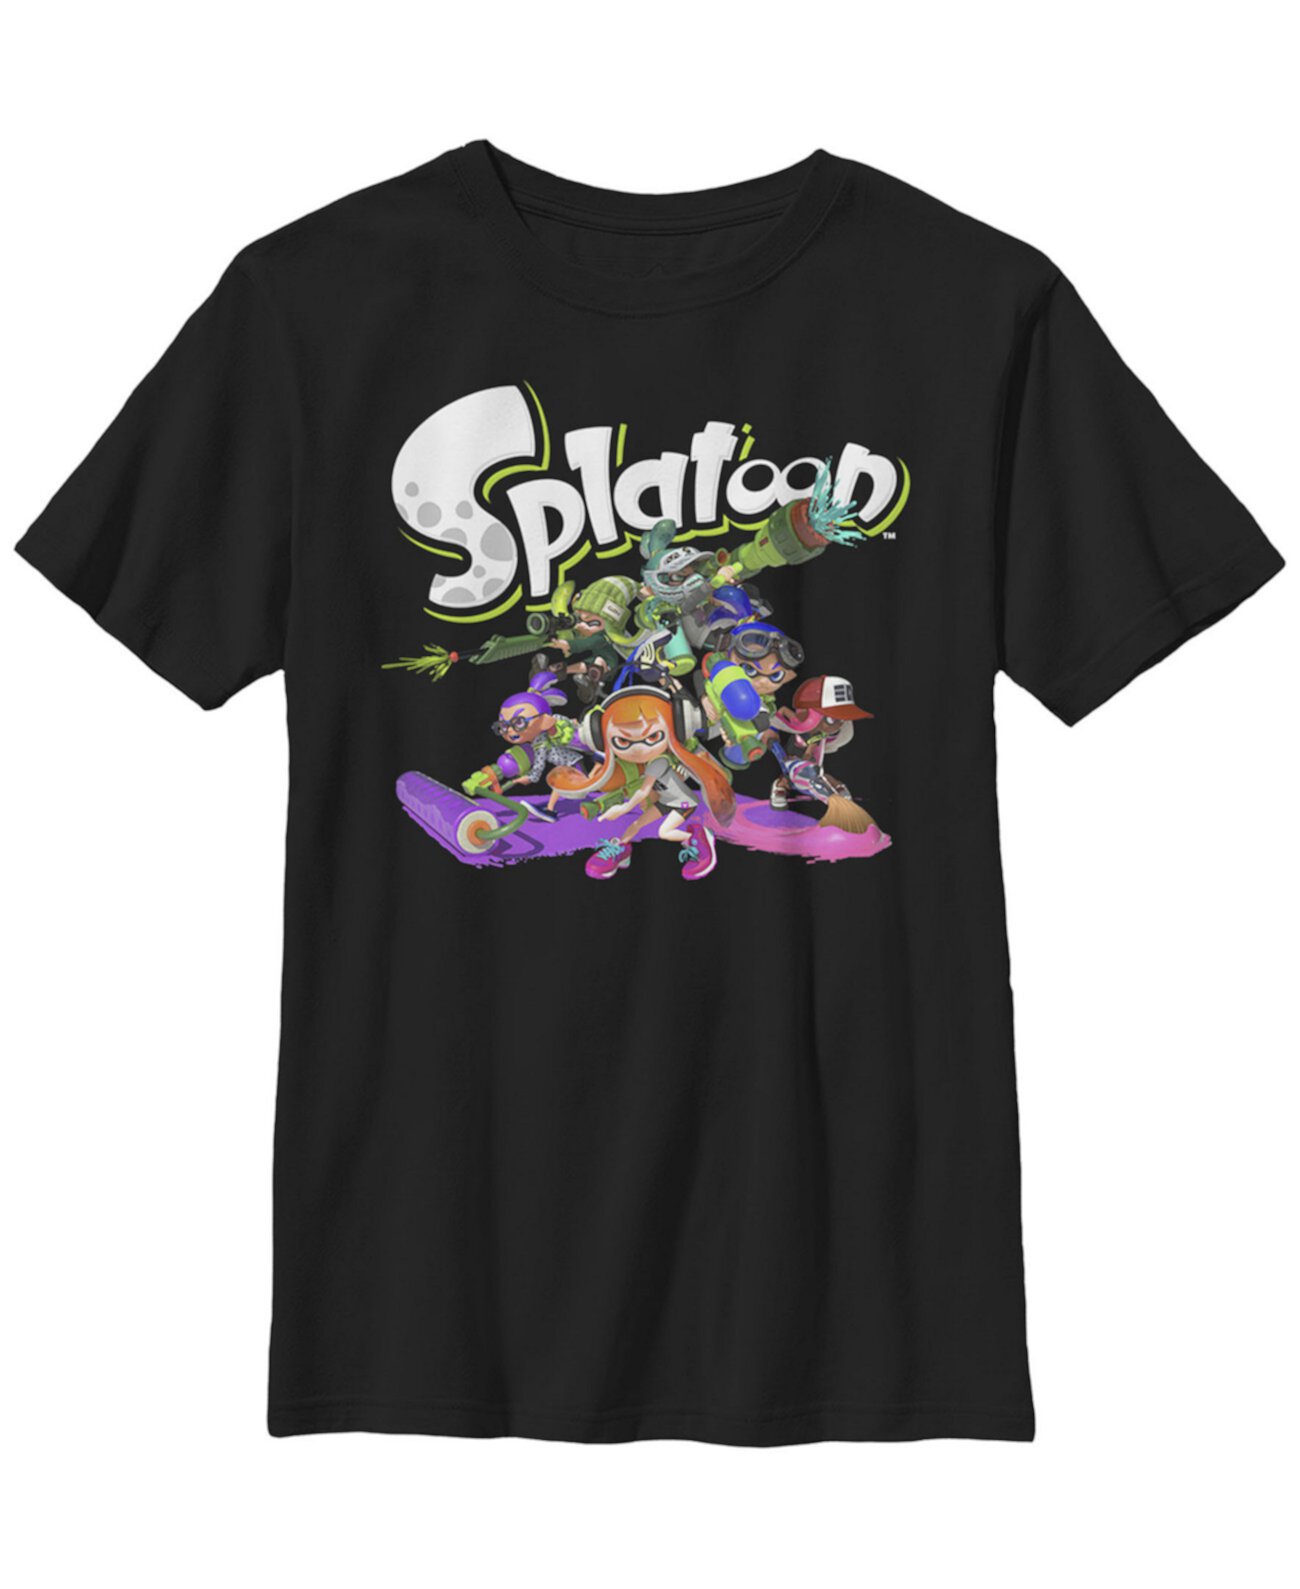 Групповая футболка с короткими рукавами с логотипом Nintendo Big Boy's Splatoon Logo FIFTH SUN